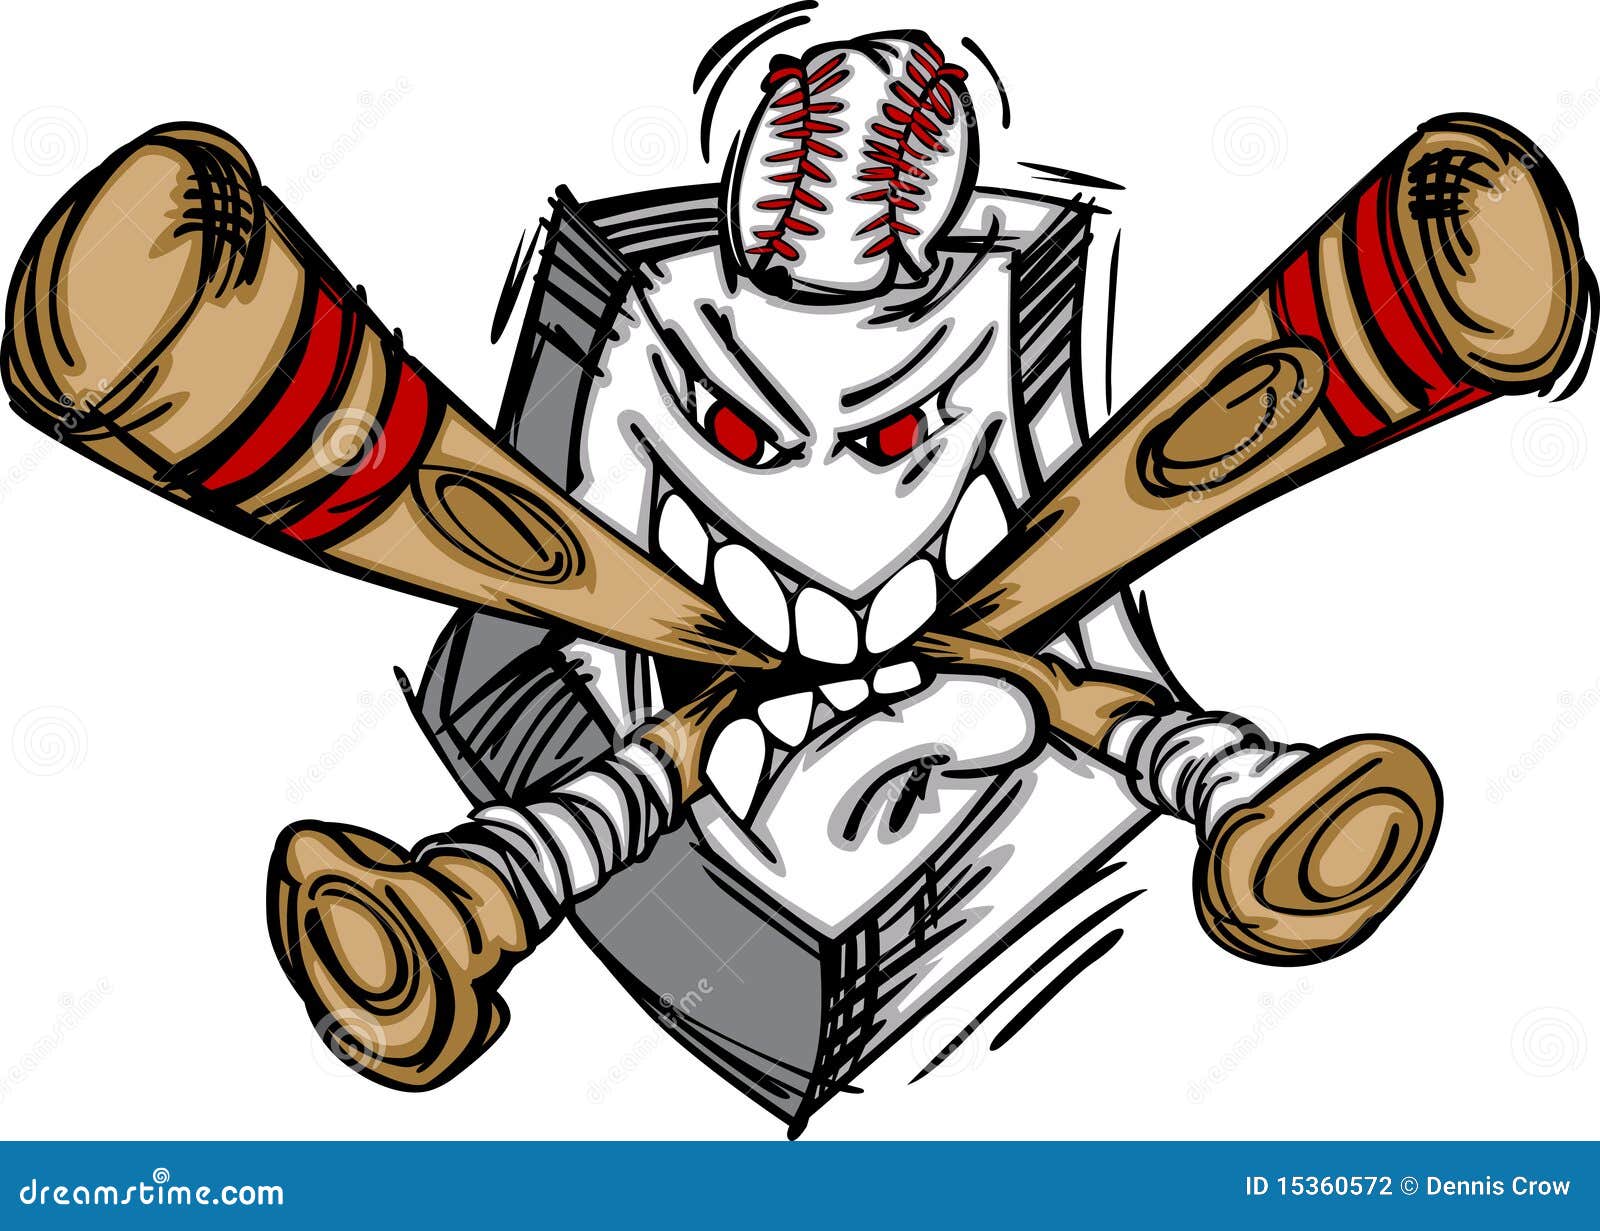 Baseball Softball Plate And Bats Stock Vector - Image: 15360572